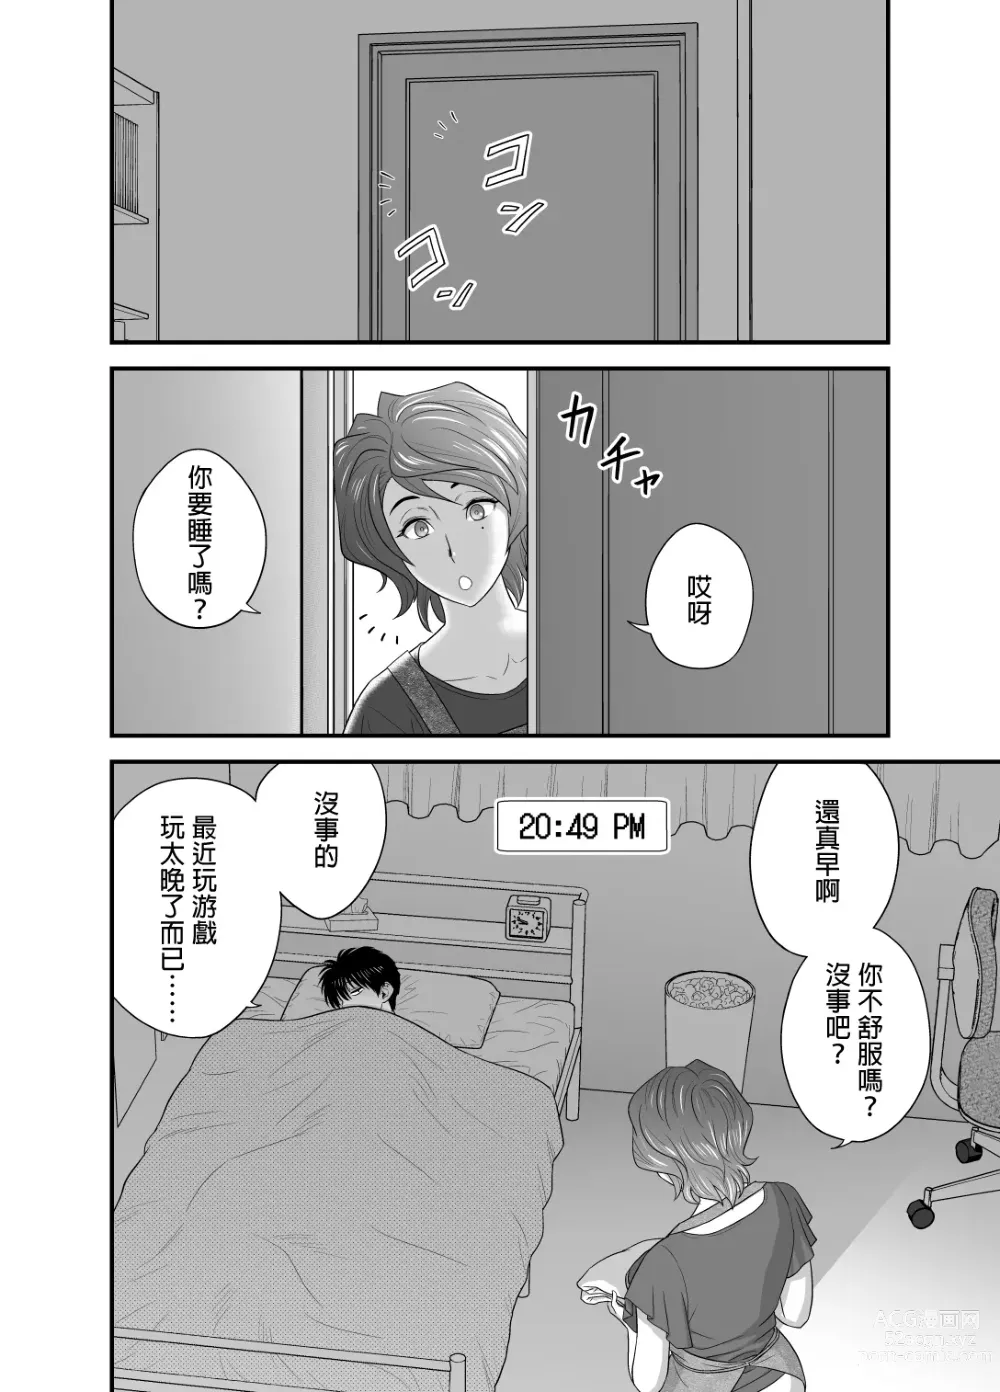 Page 162 of manga 母が友カノになったので1~3